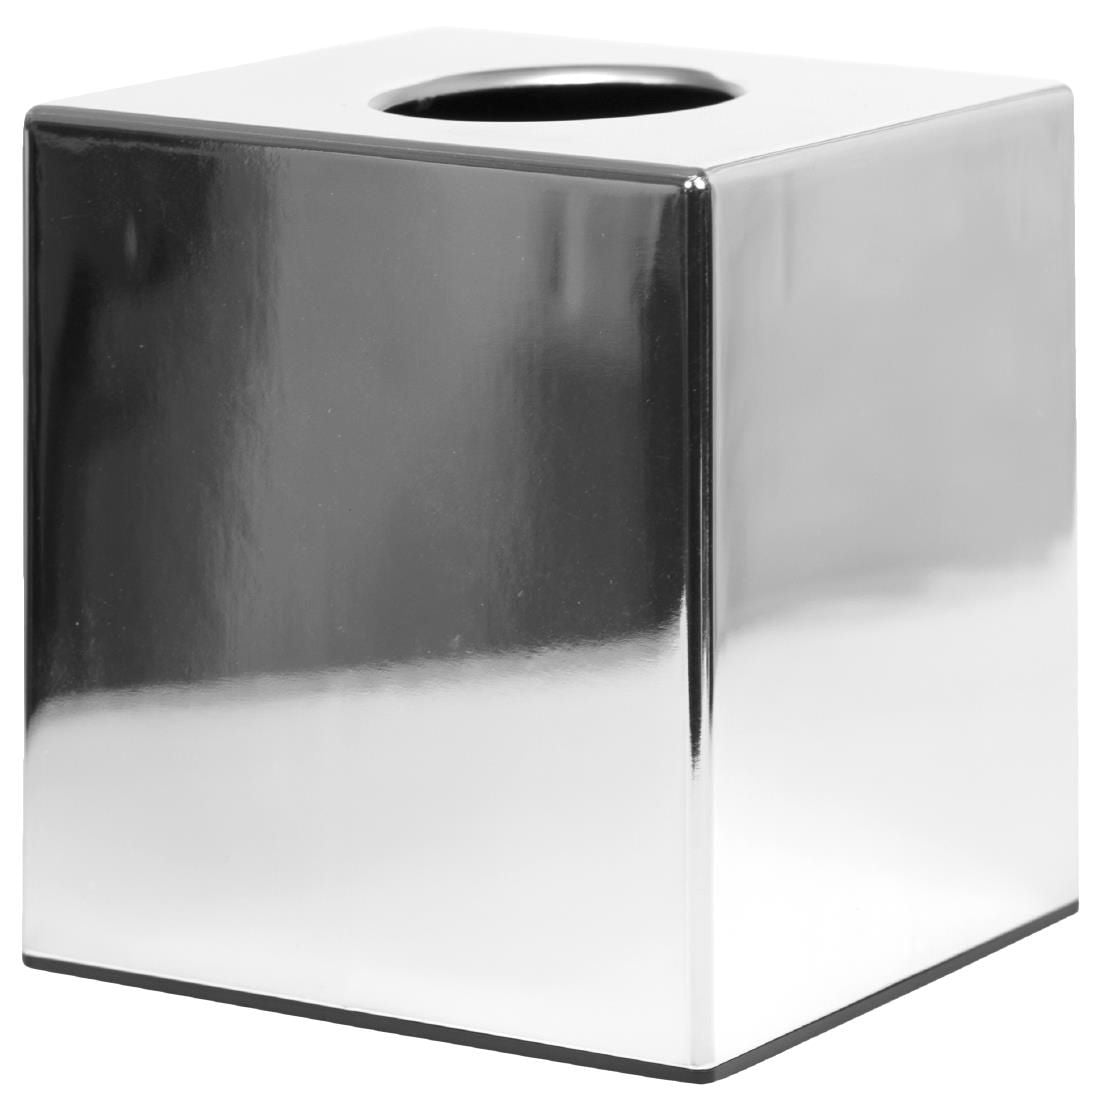 Bolero Chrome Cube Tissue Holder JD Catering Equipment Solutions Ltd